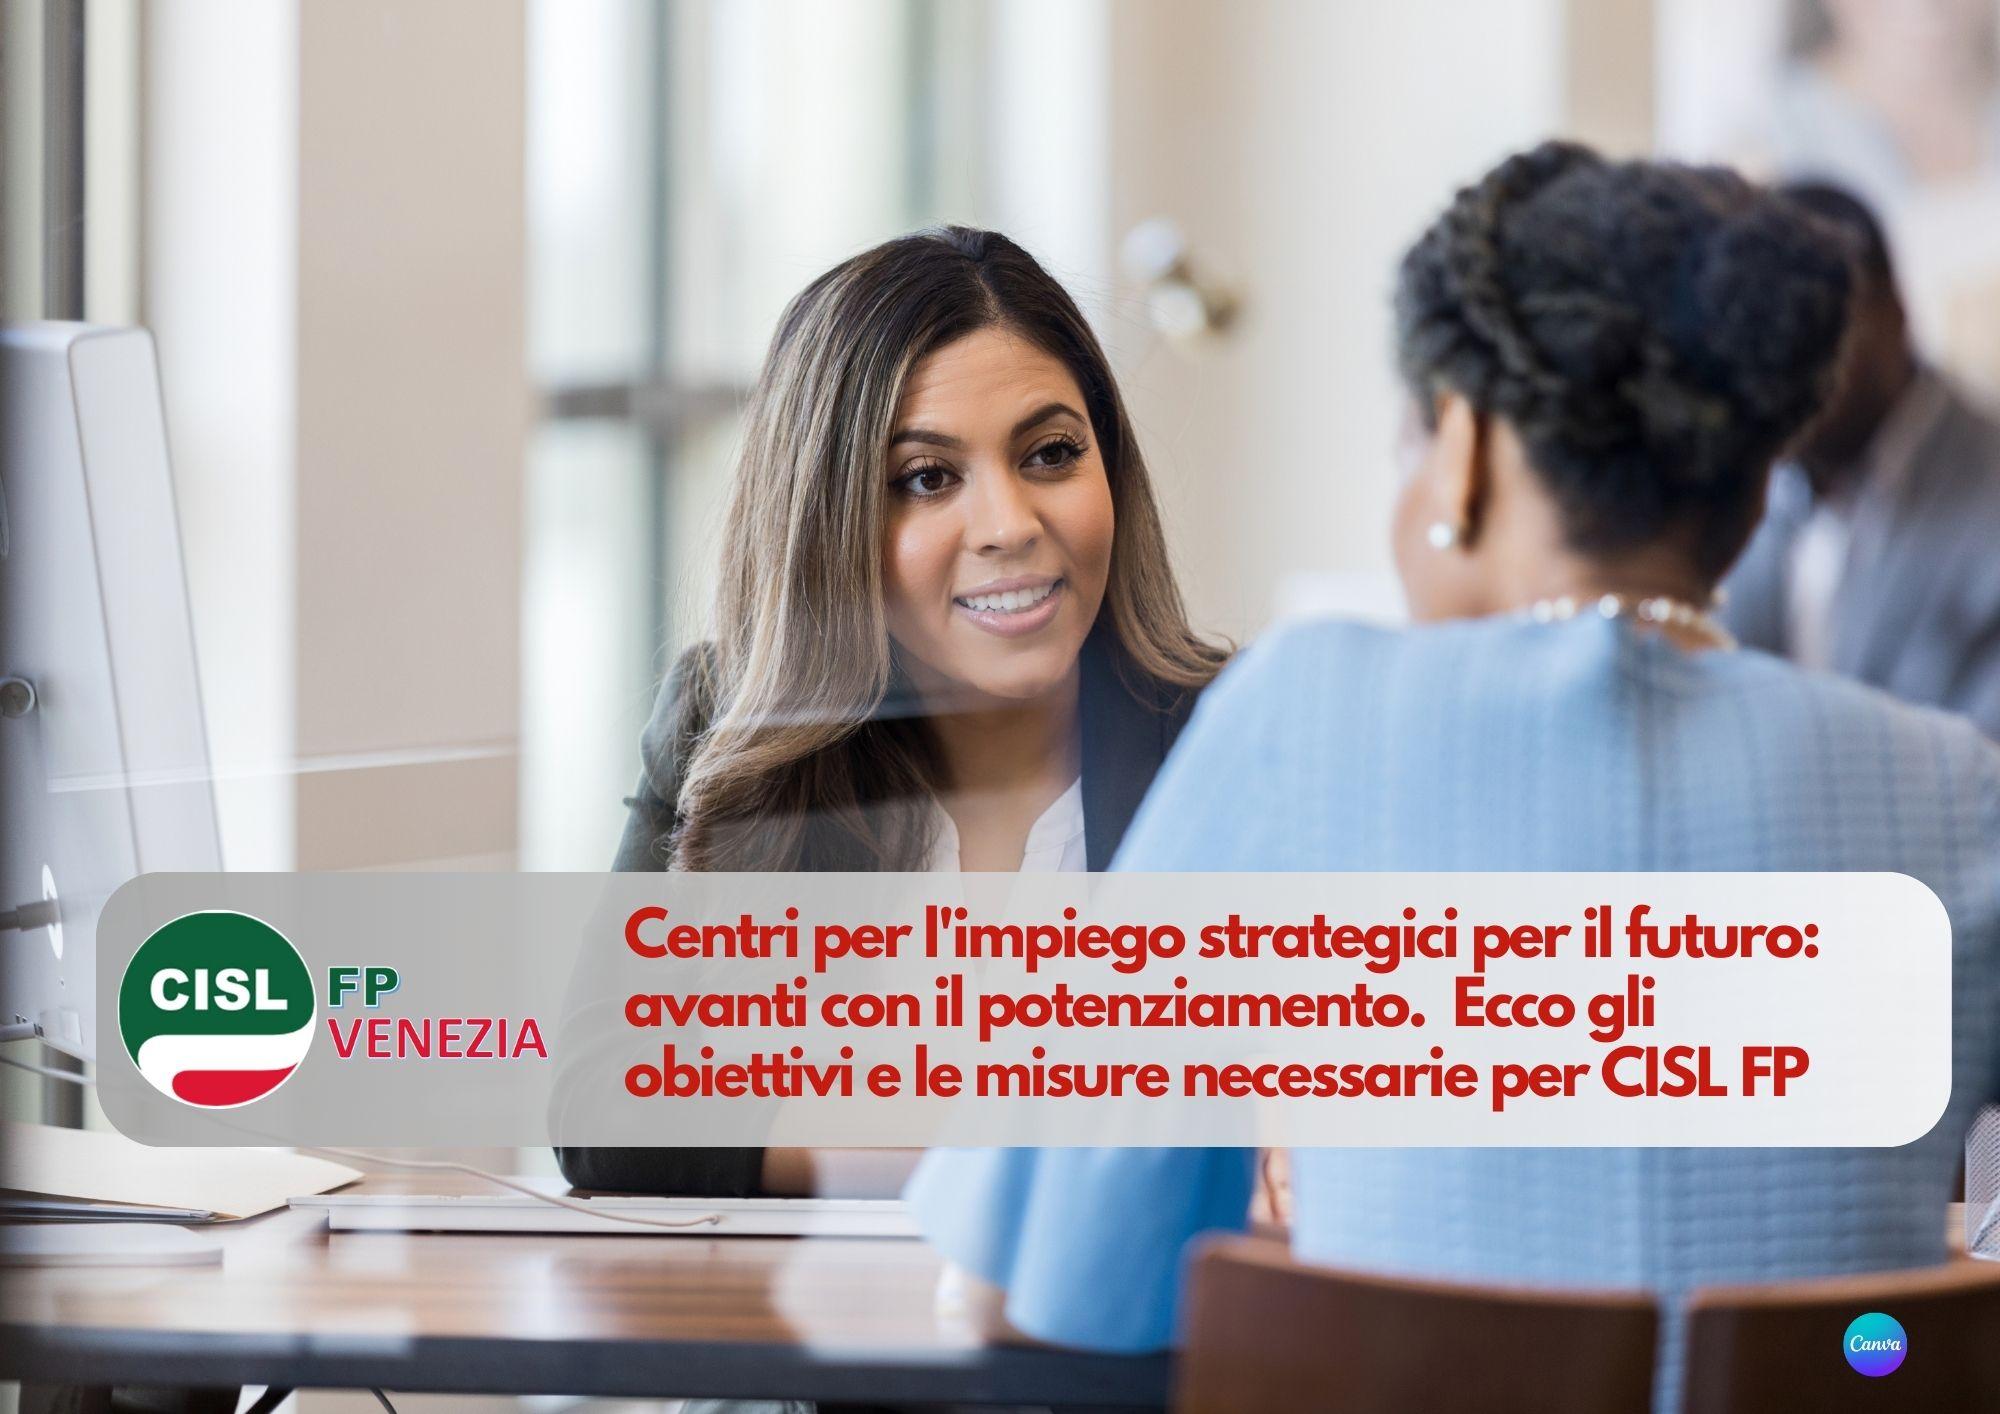 CISL FP Venezia. Centri per l'impiego strategici per il futuro: avanti con il potenziamento